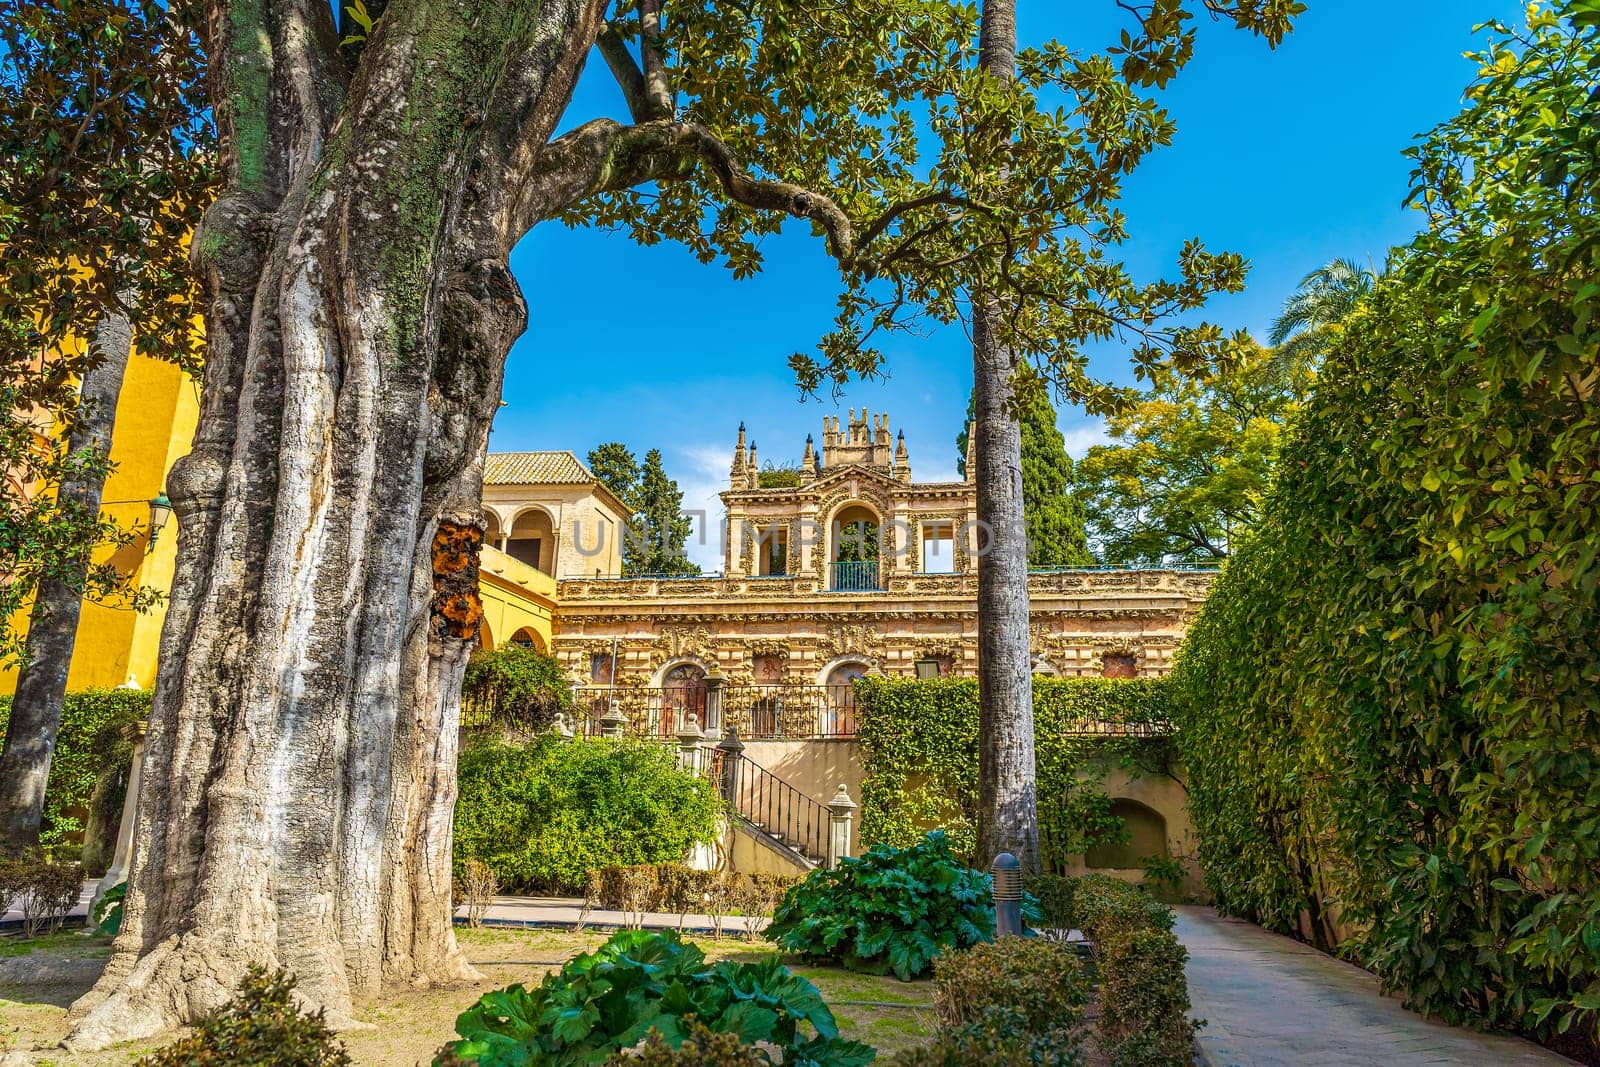 Exterior and garden of Real Alcazar Destination in  Sevilla, Spain